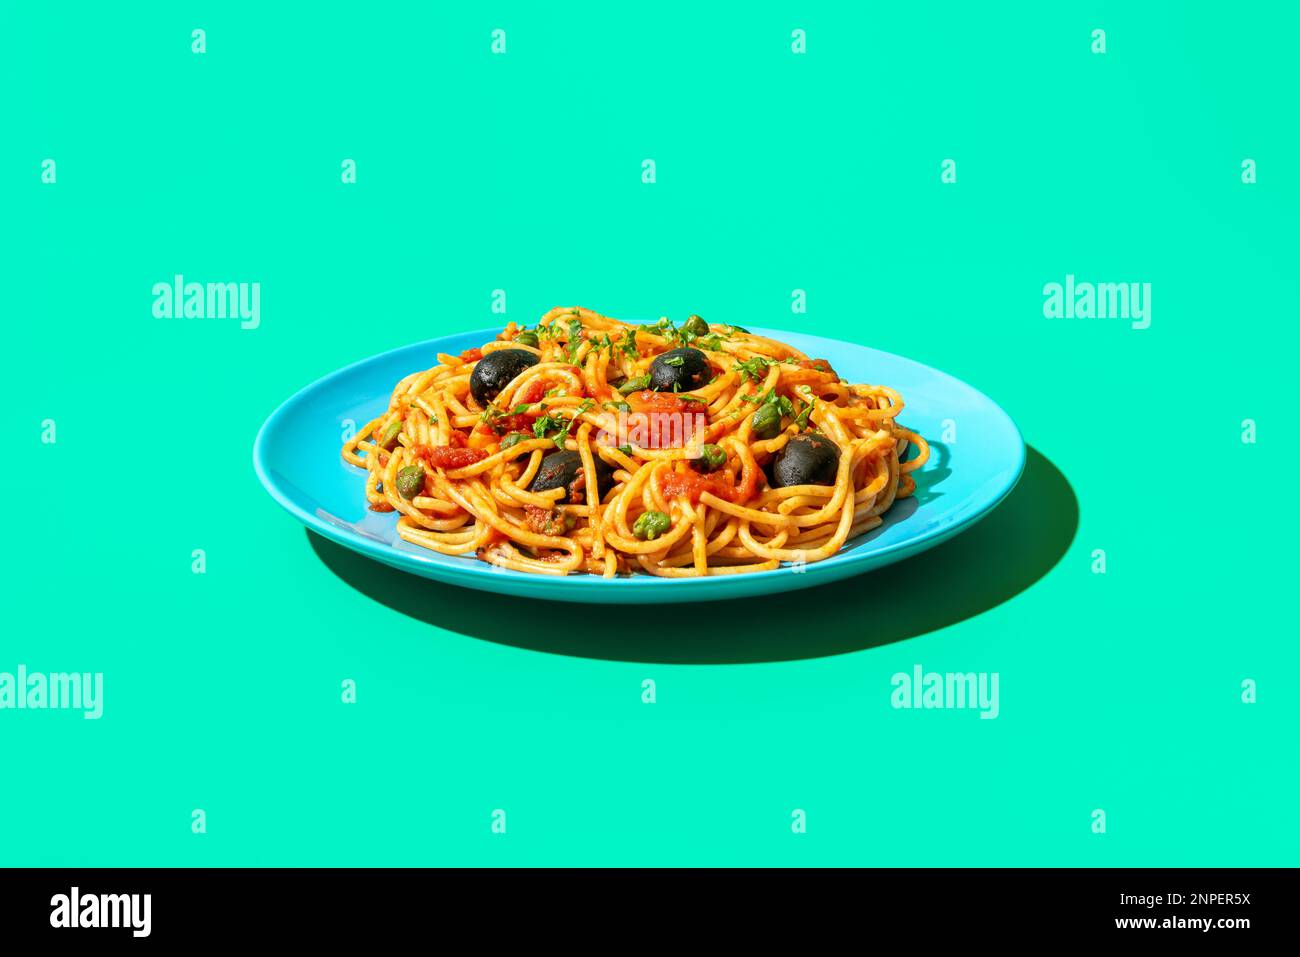 Teller mit Spaghetti puttanesca minimalist auf einem grünen Tisch. Vegane Pasta mit Kapern, schwarzen Oliven und Kirschtomaten. Stockfoto